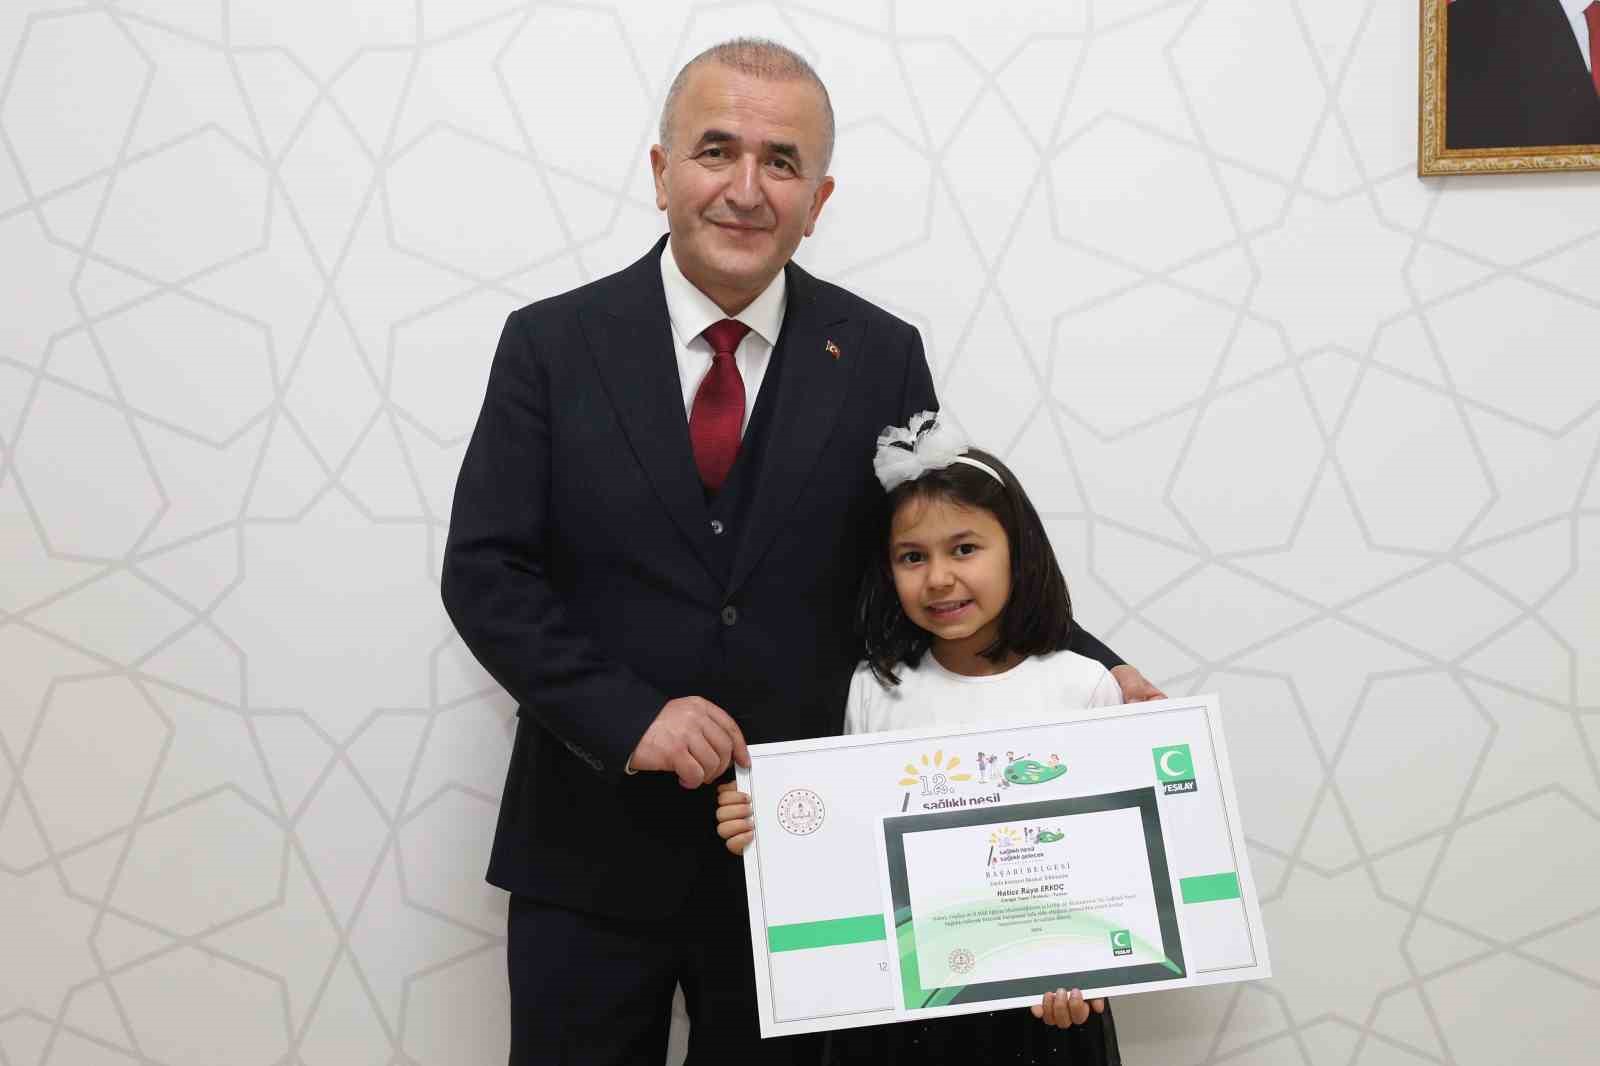 Tokat’ta minik Hatice’nin büyük iyiliği: Gazze’deki çocuklar için ödülünü bağışladı
